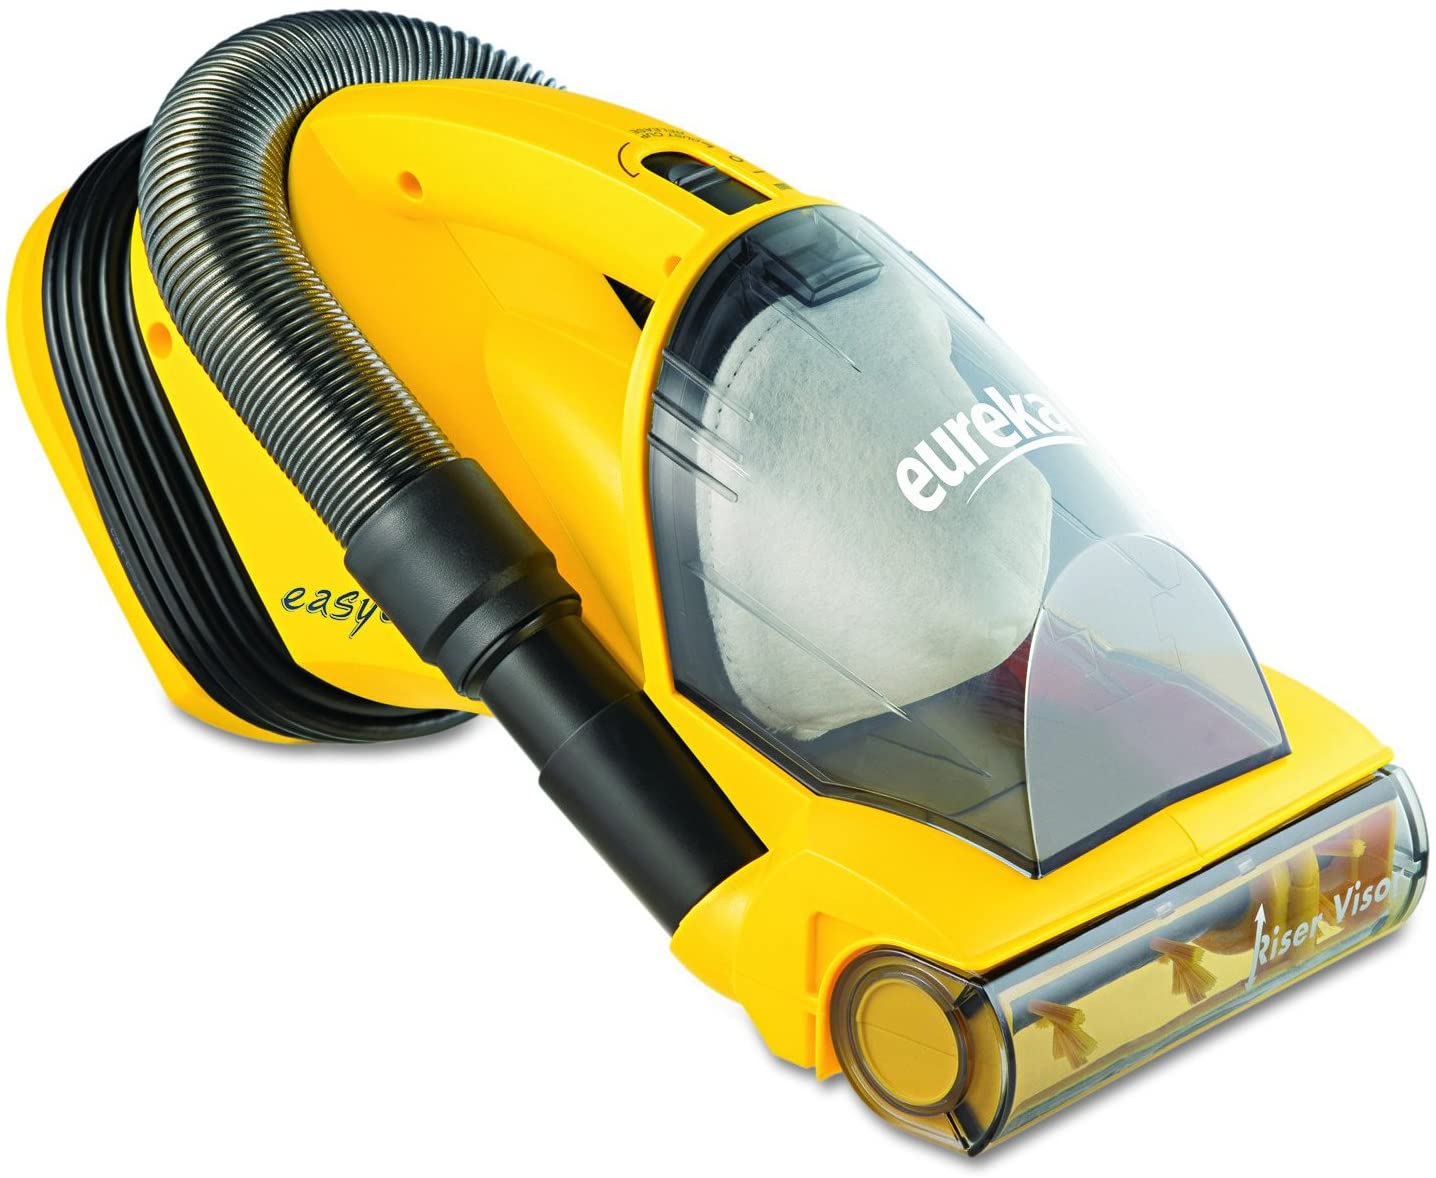 Eureka Easyclean Lightweight Handheld Vacuum Cleaner